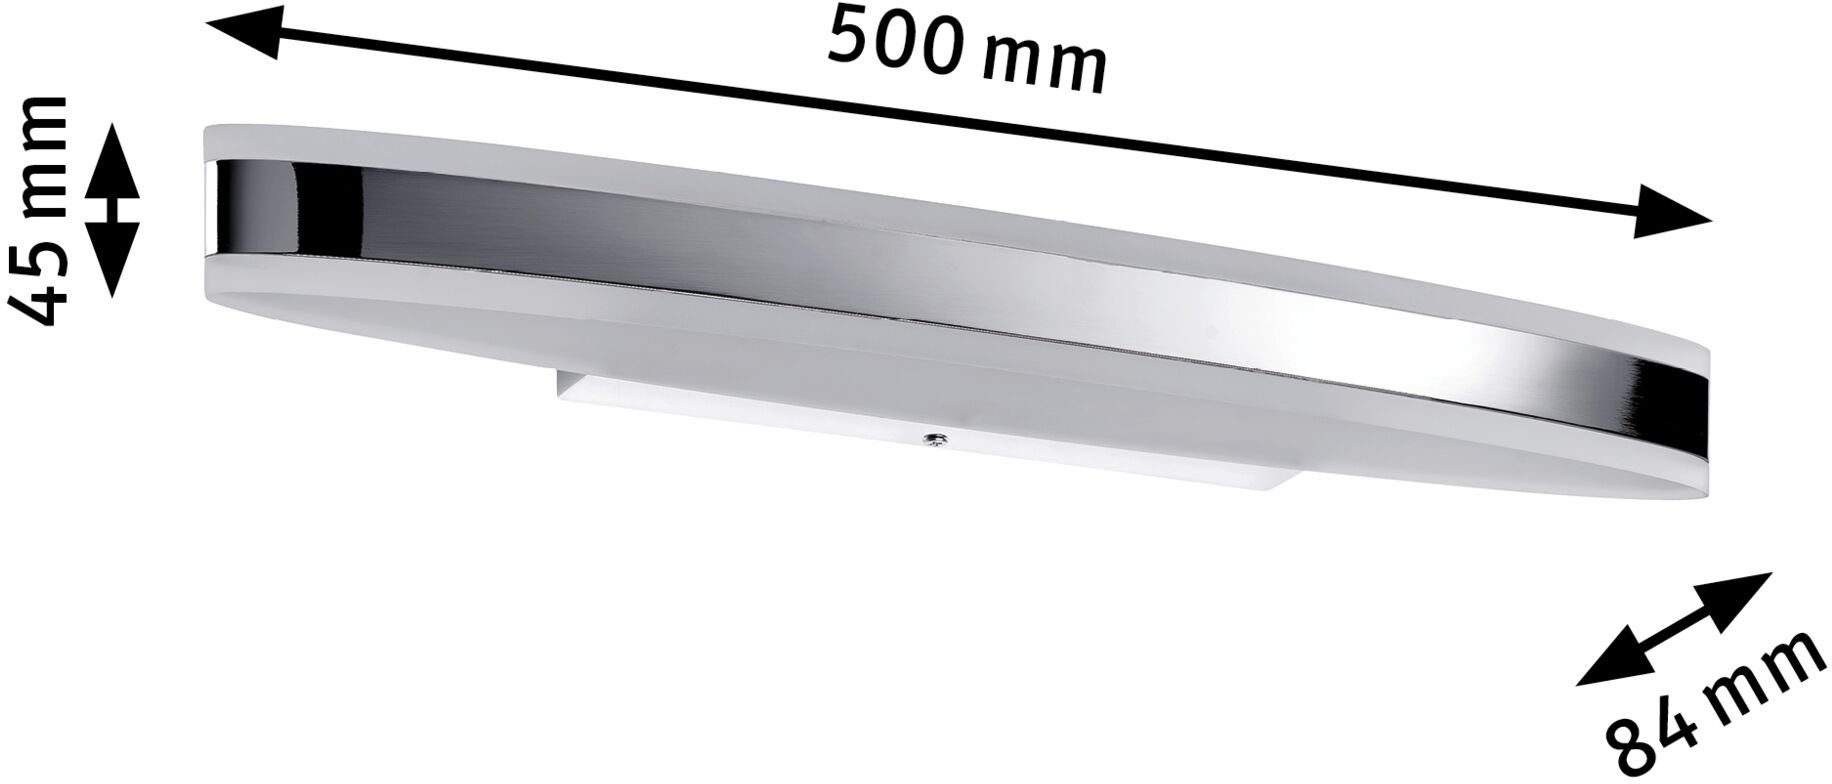 Badezimmerleuchte IP44 Spiegelleuchte LED Paulmann Weiß, Metall, Chrom, 9W fest Acryl, Warmweiß, integriert, Kuma 500mm